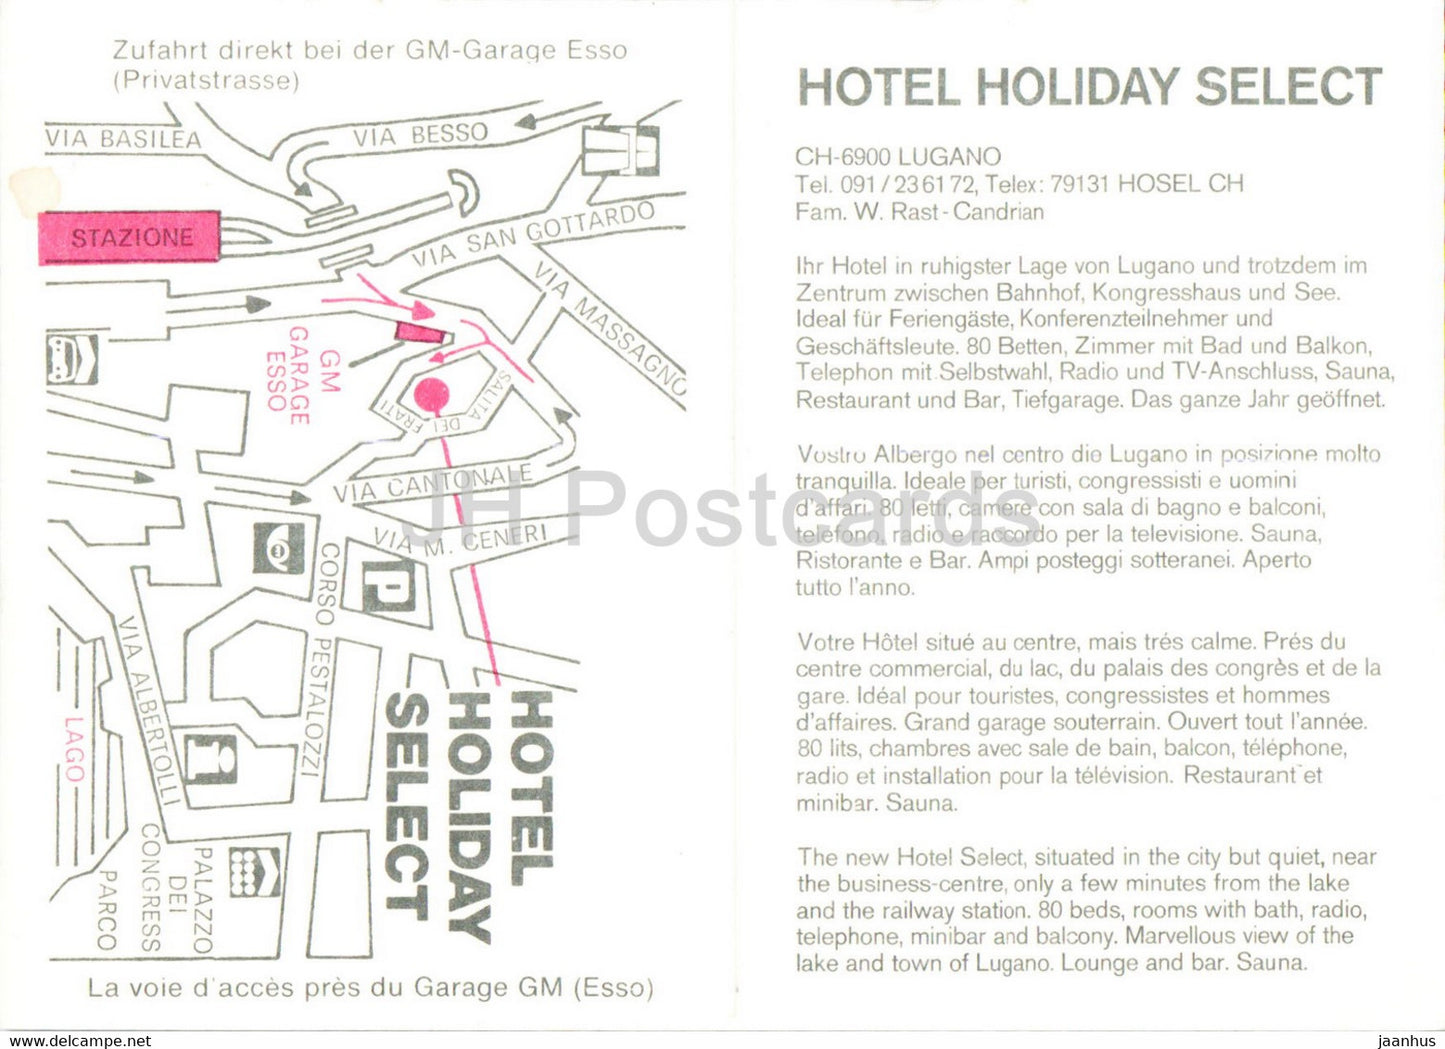 Holiday Hotel Select - Lugano - Switzerland - unused